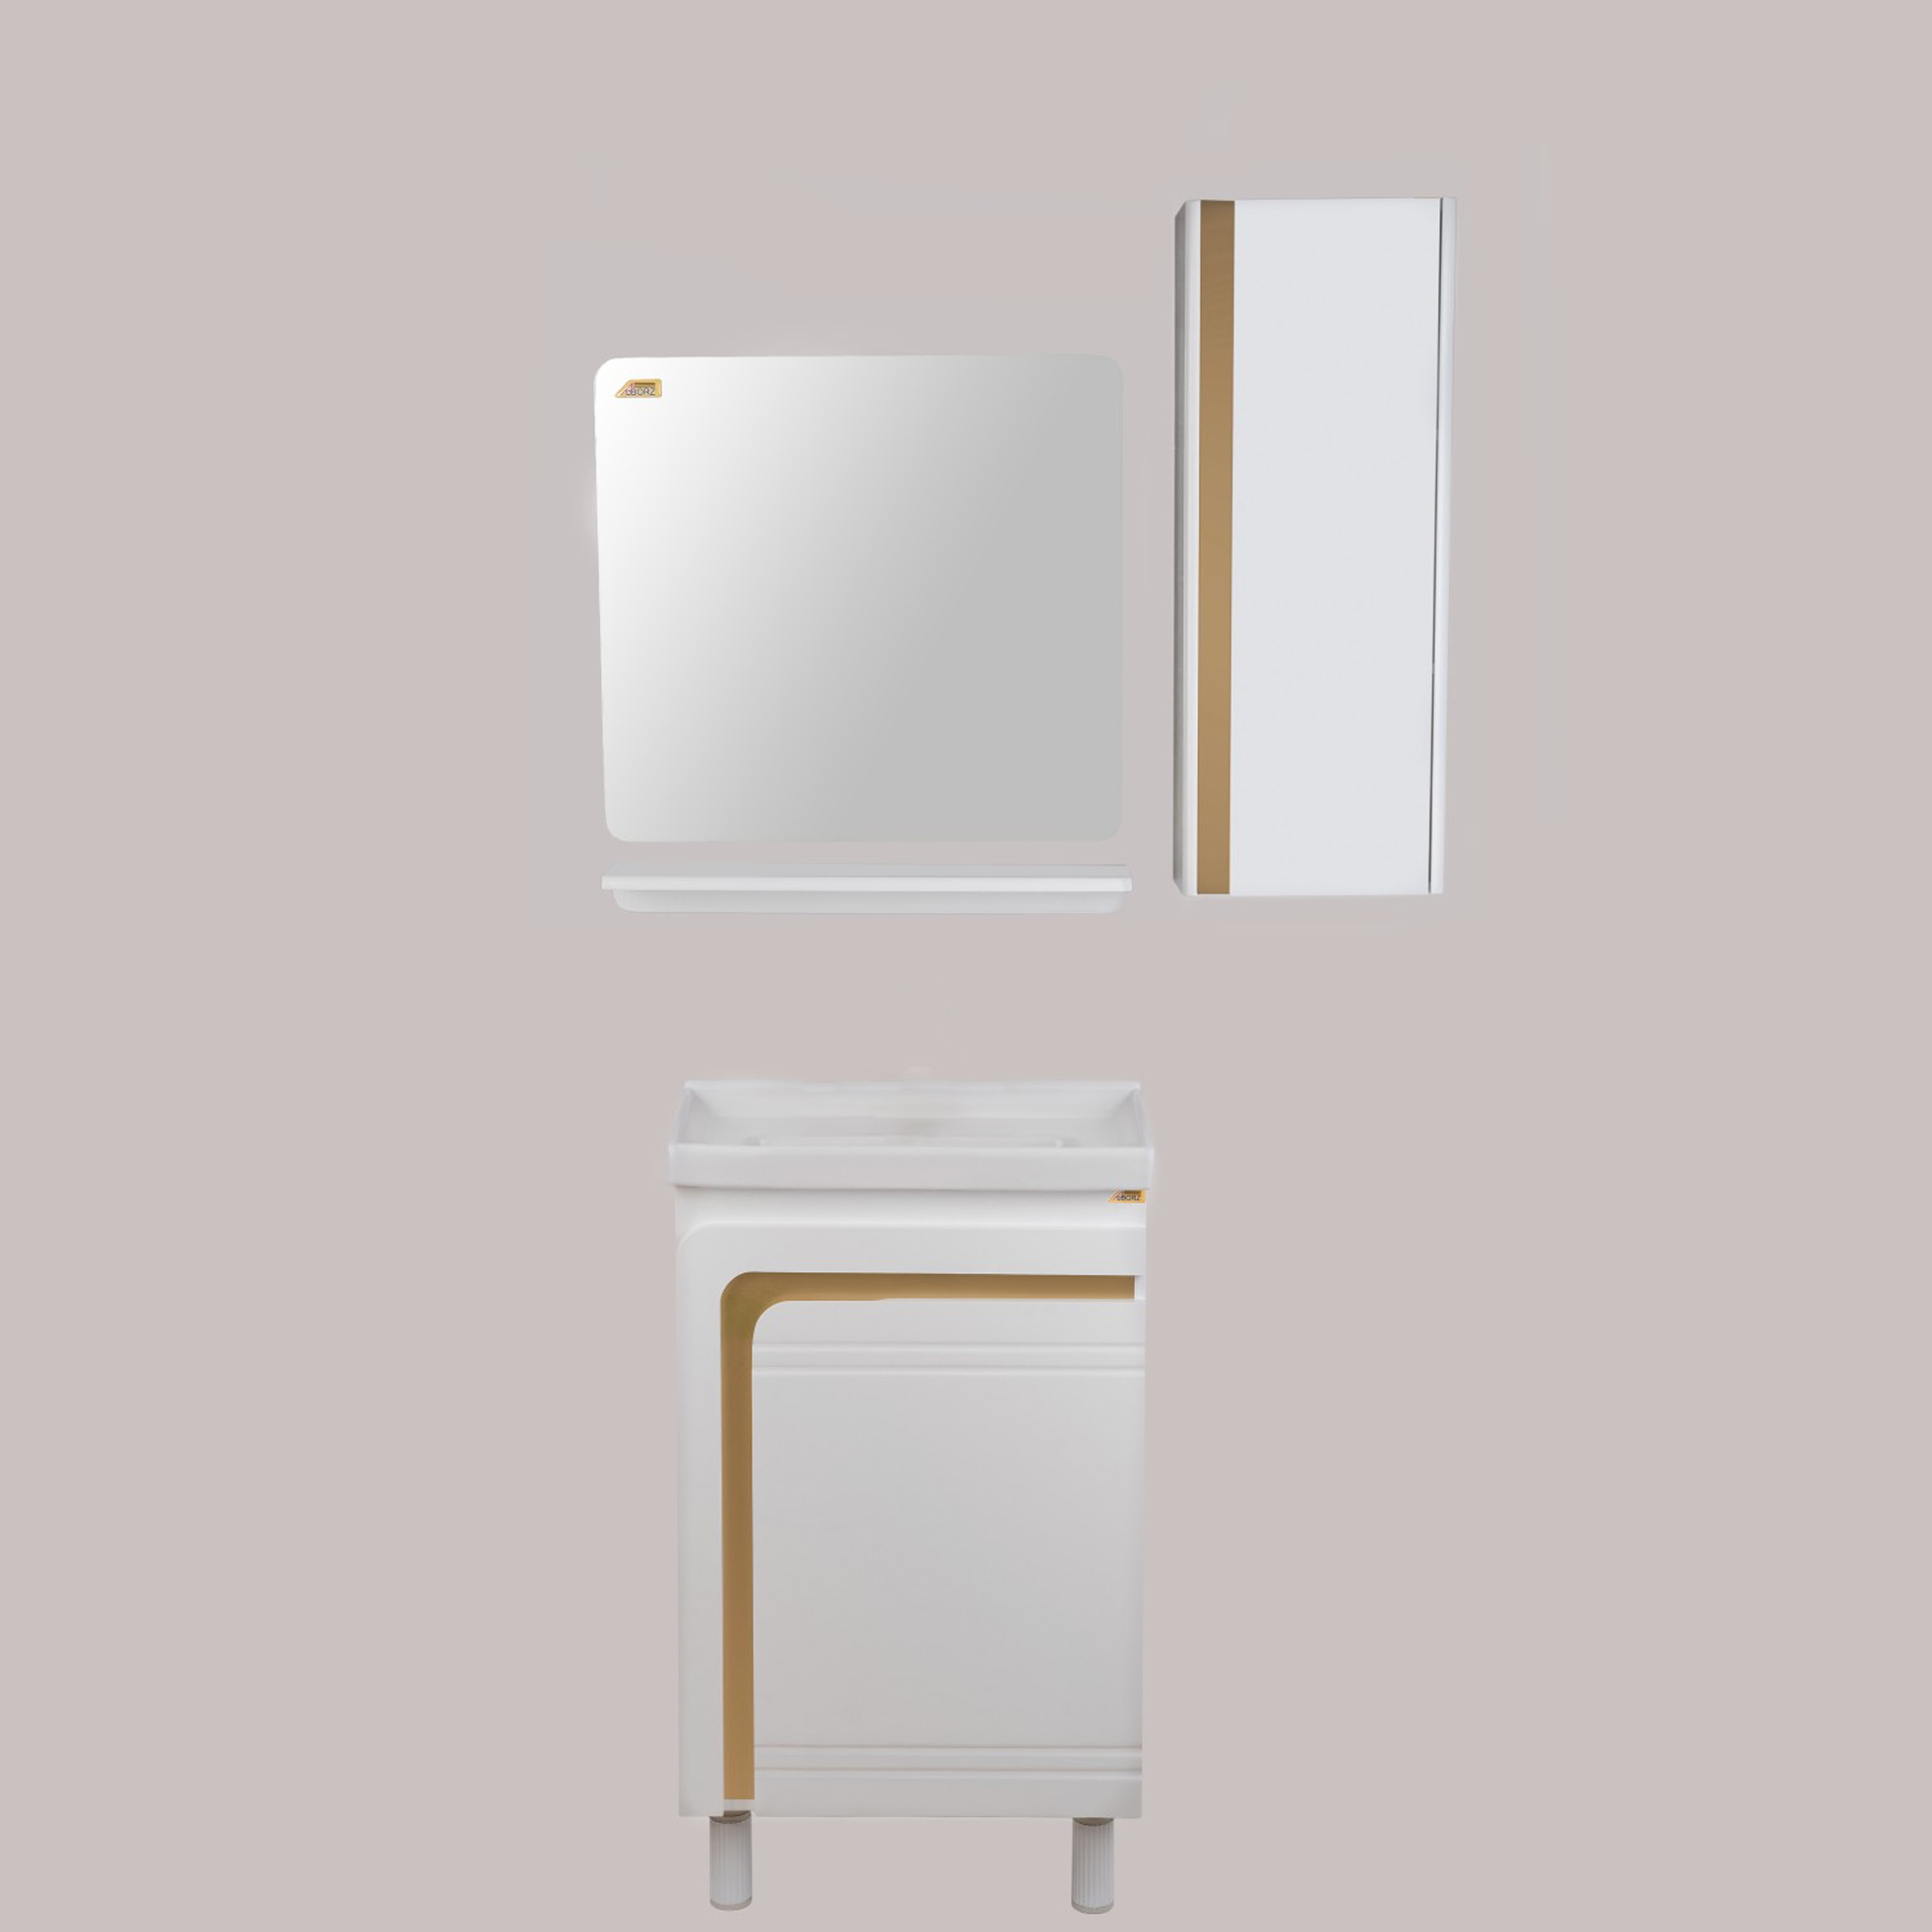 ست کابینت و روشویی گلسار مدل آستر 50 به همراه آینه و باکس و اتاژور